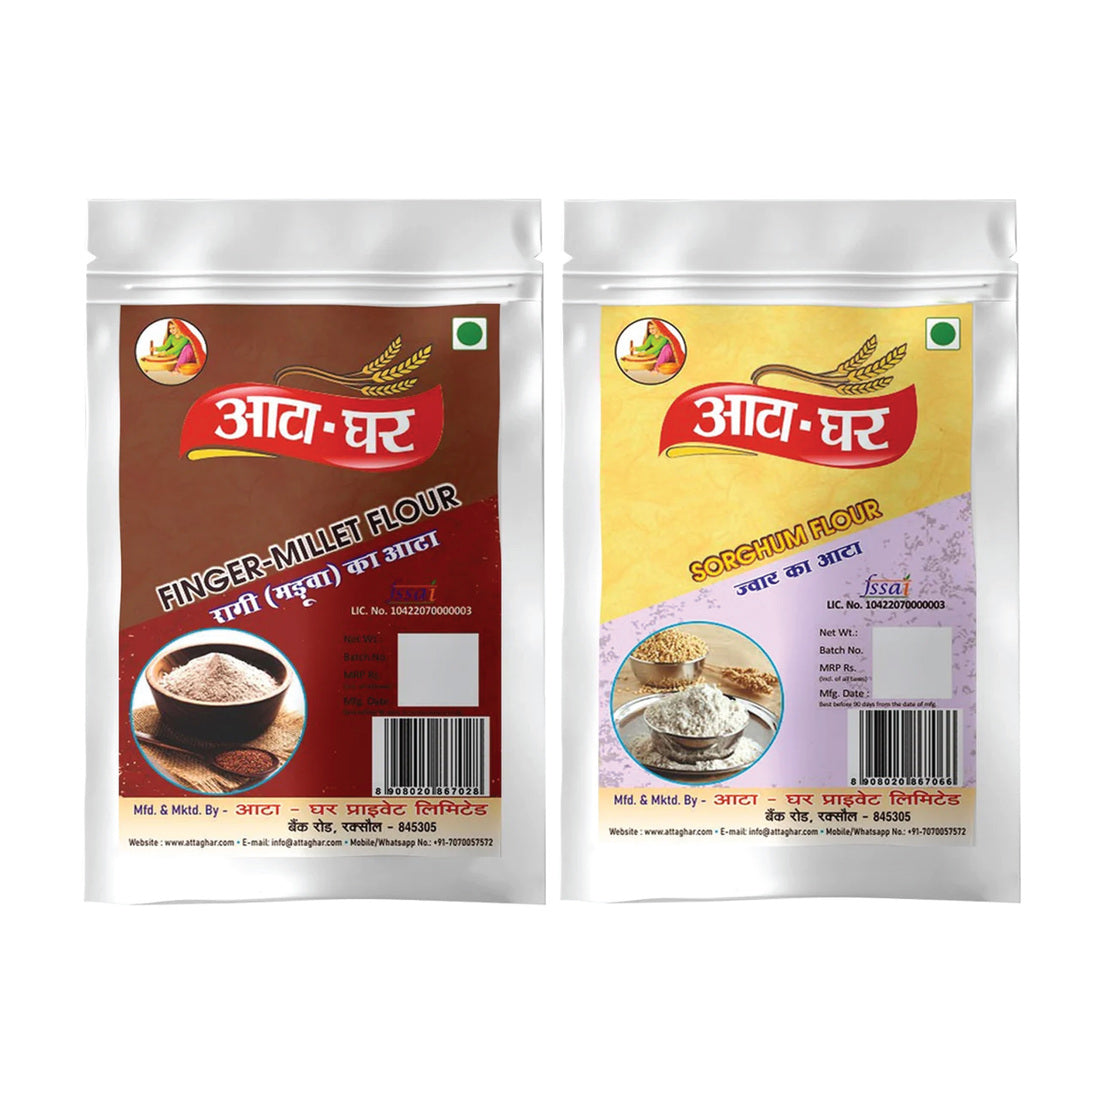 Atta-Ghar Combo of Ragi and Jowar Flour, 1 kg each